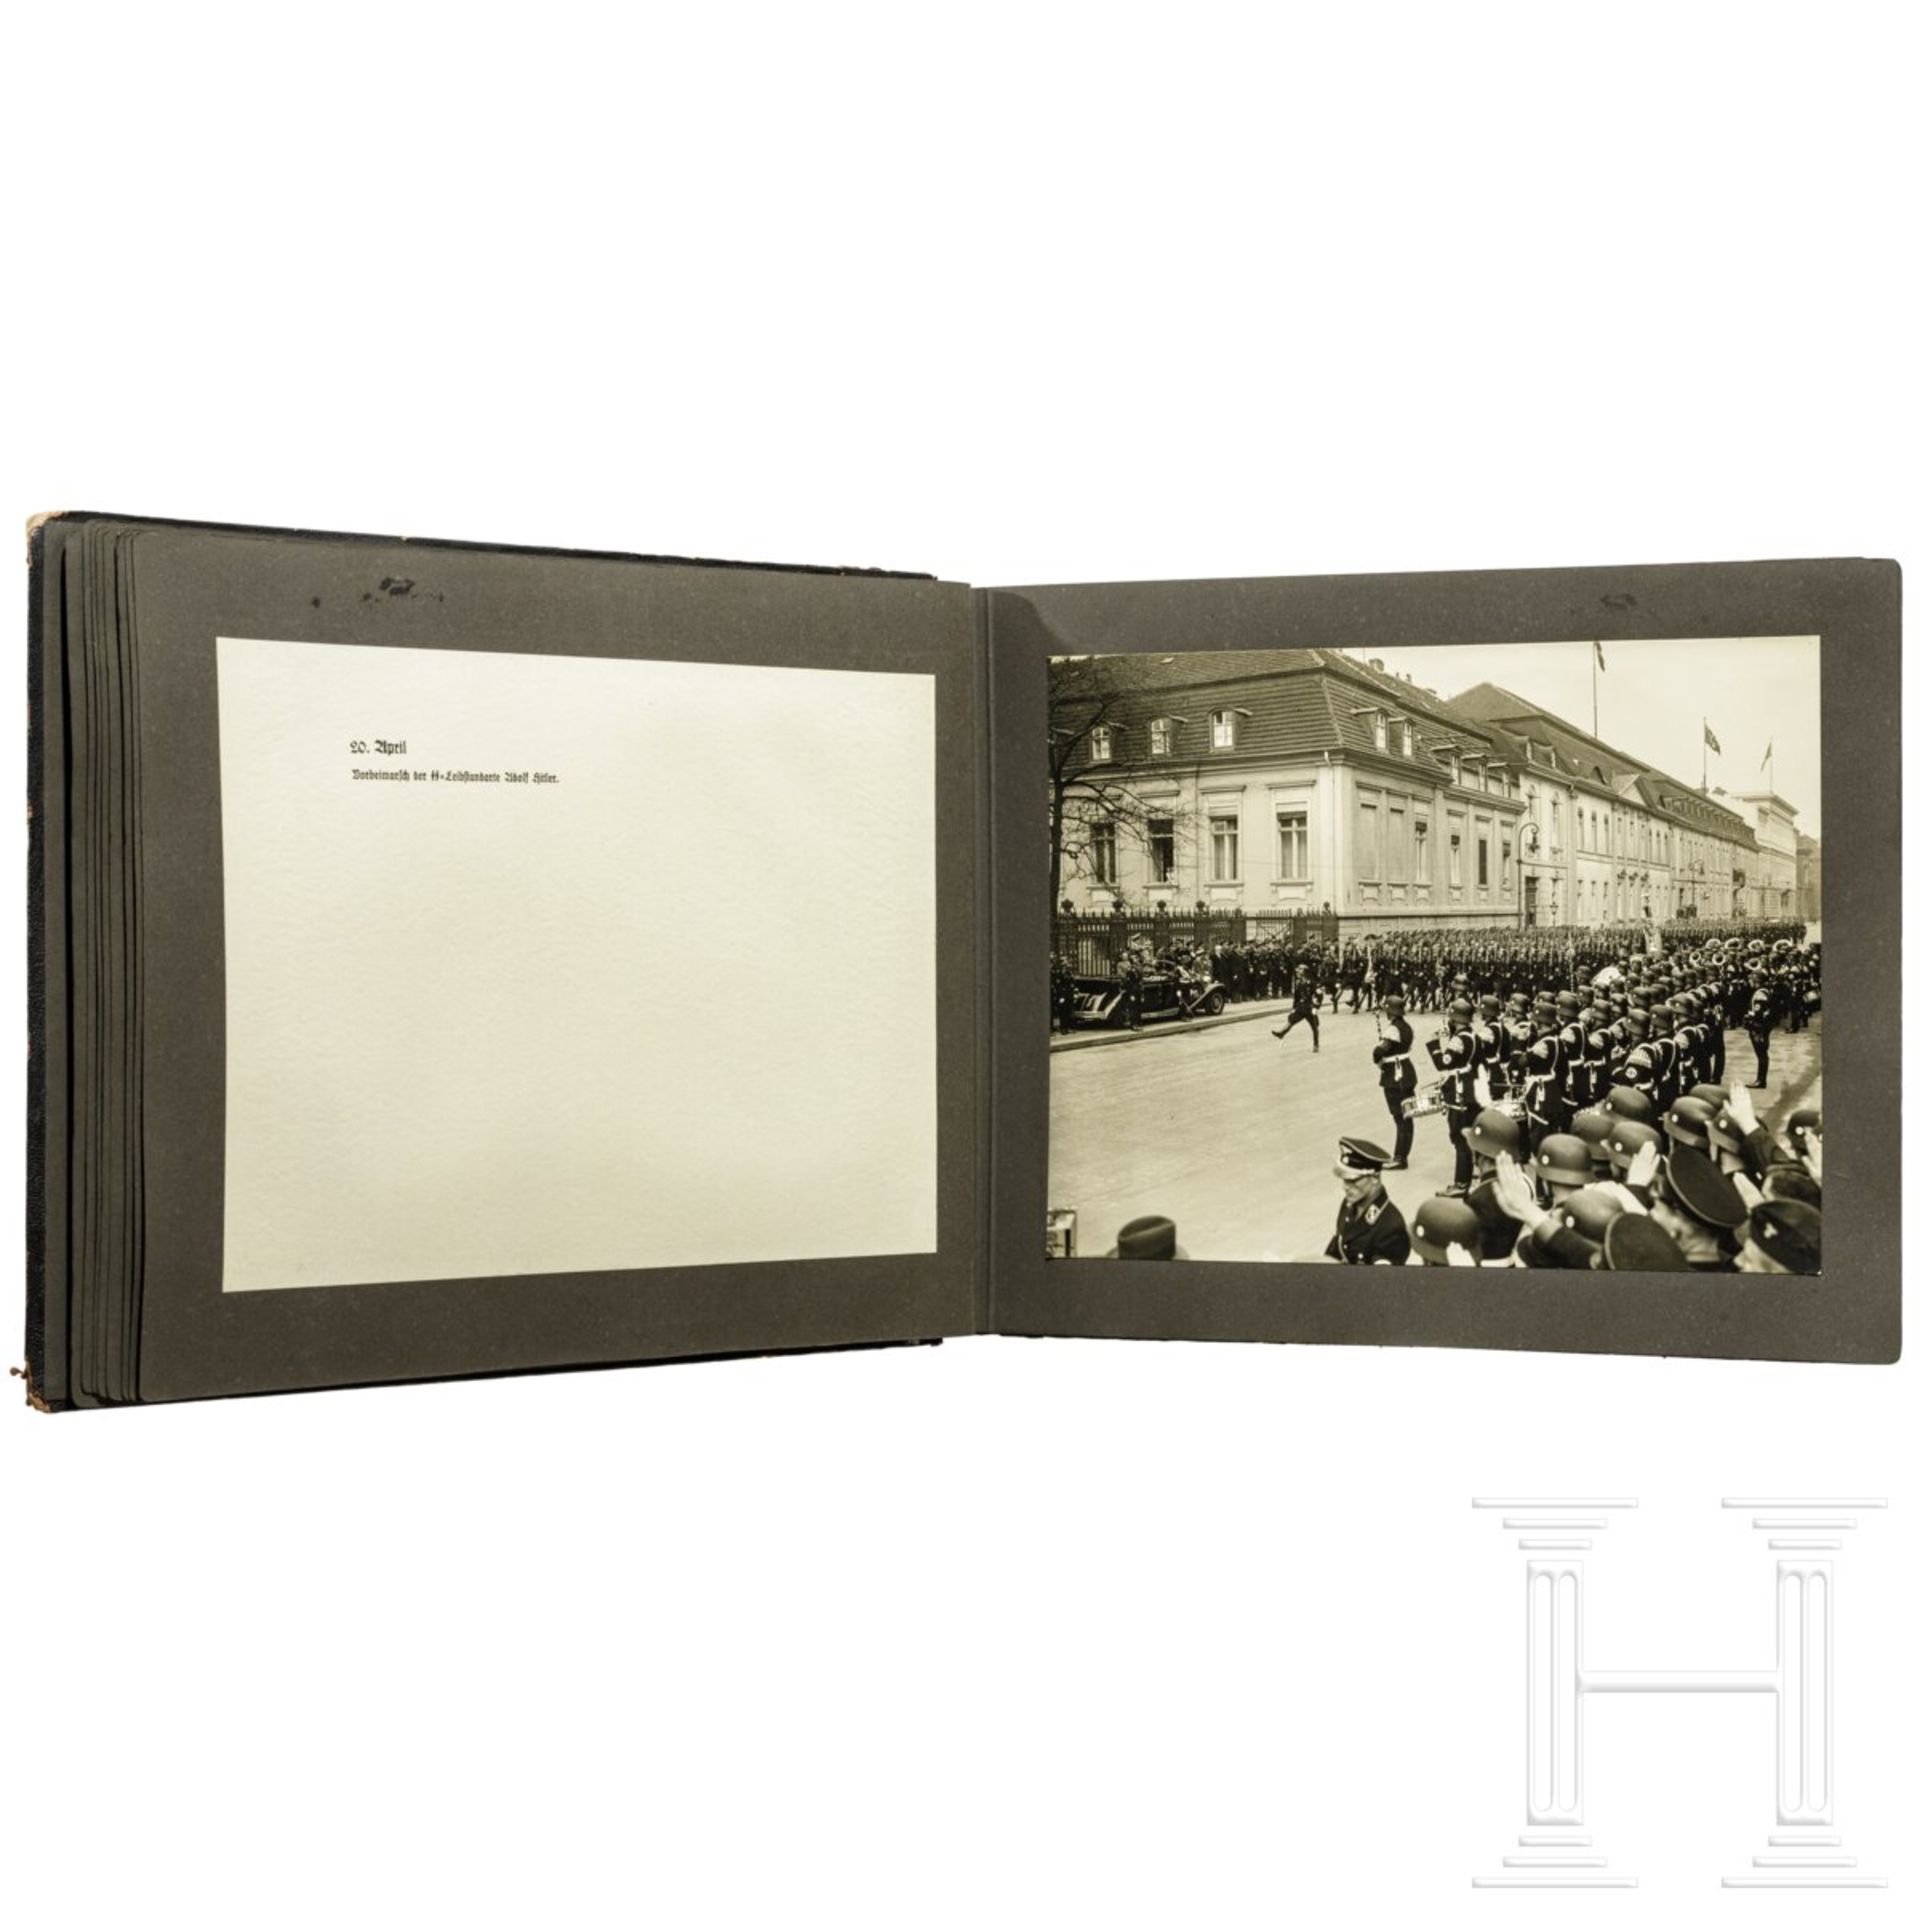 Geschenk-Fotoalbum der Partei 1937 mit 56 großformatigen Fotos und Textblättern - Image 15 of 17